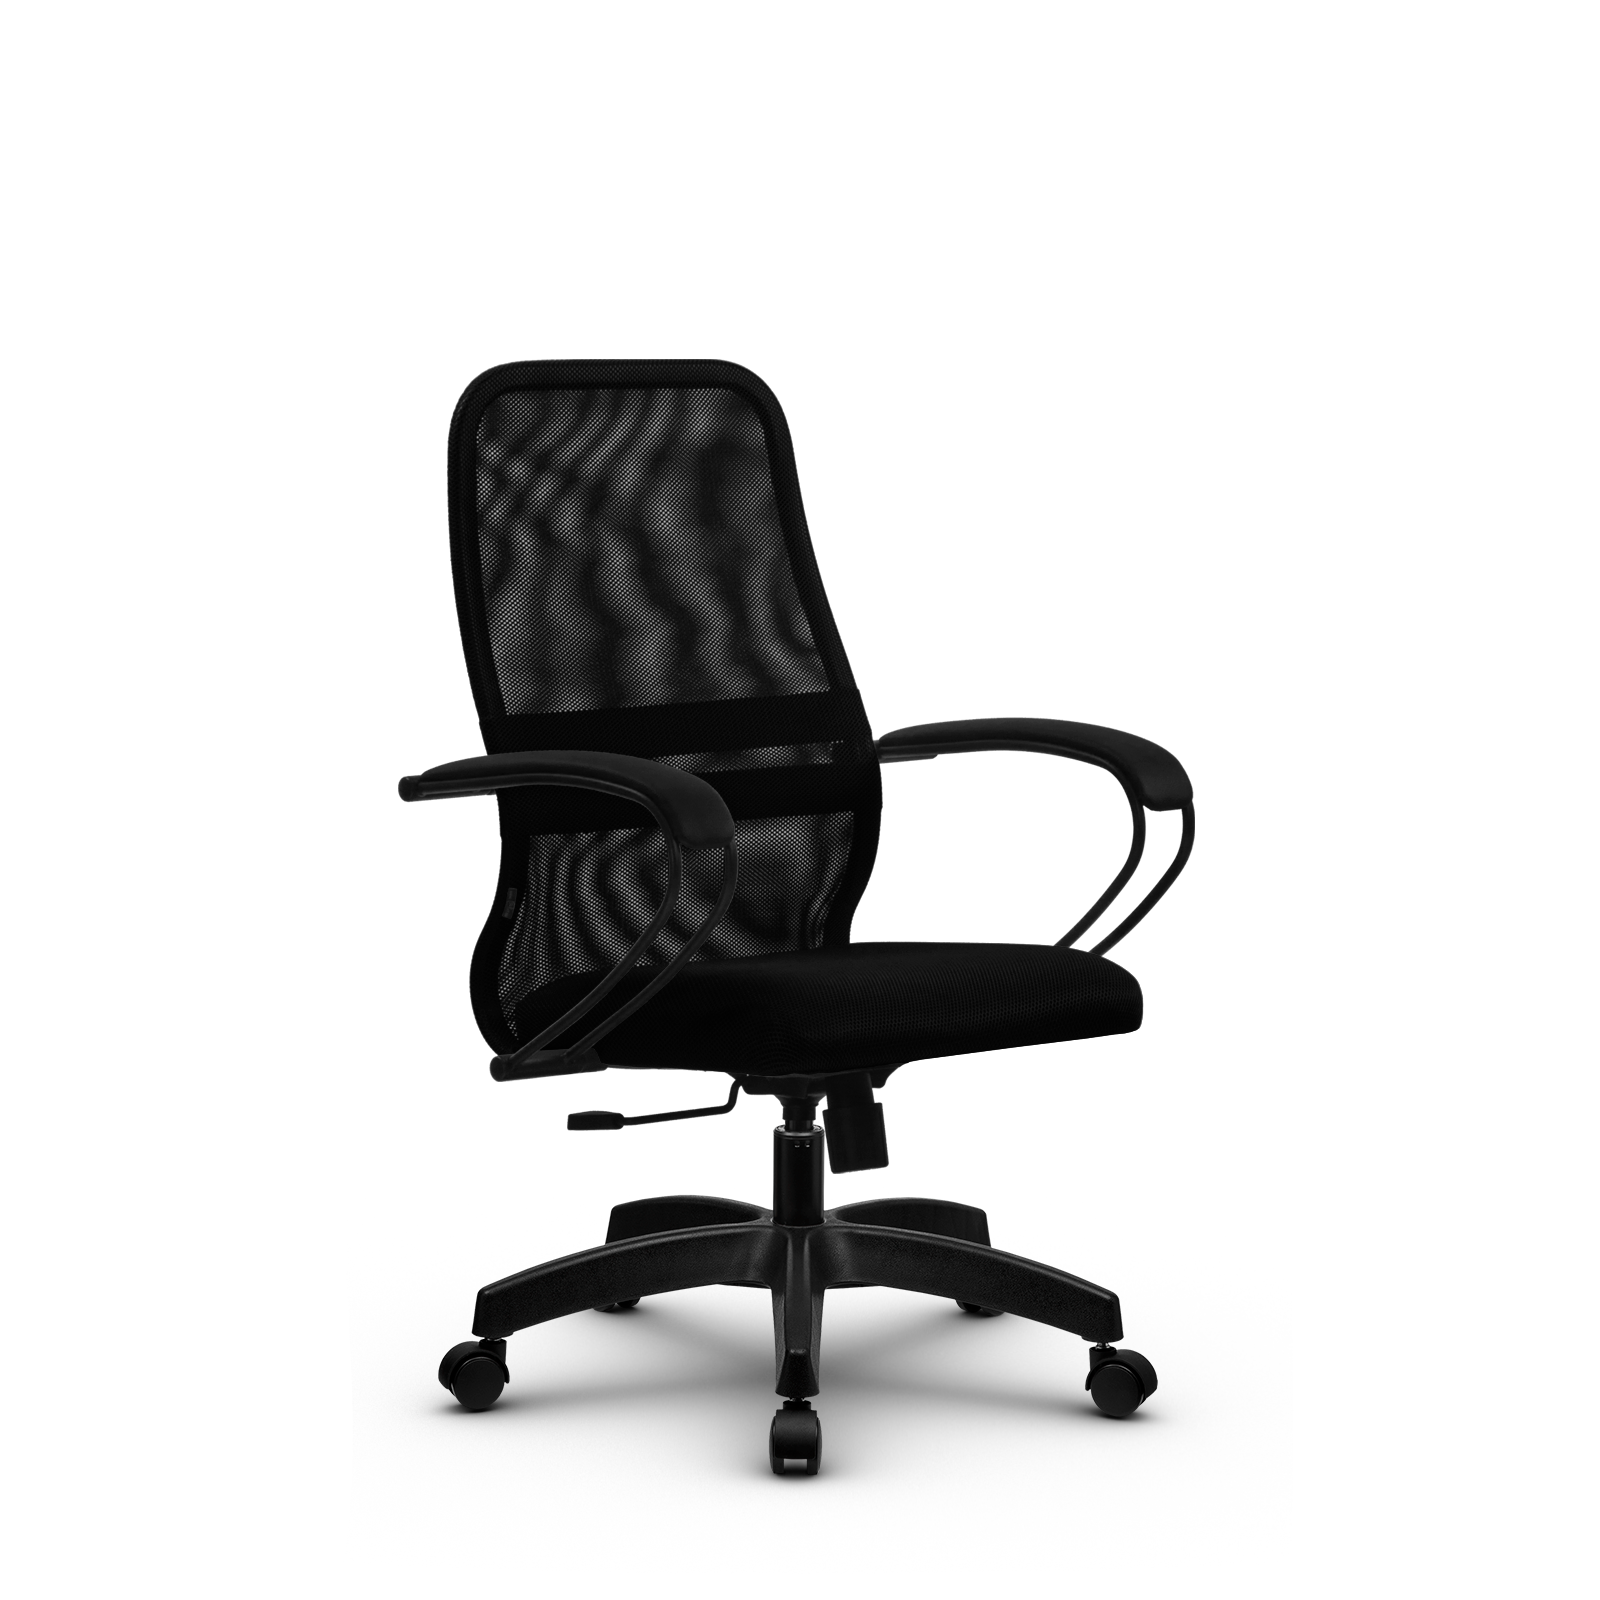 90488597 Офисное кресло Su z312464627 прочный сетчатый материал цвет черный STLM-0248475 МЕТТА